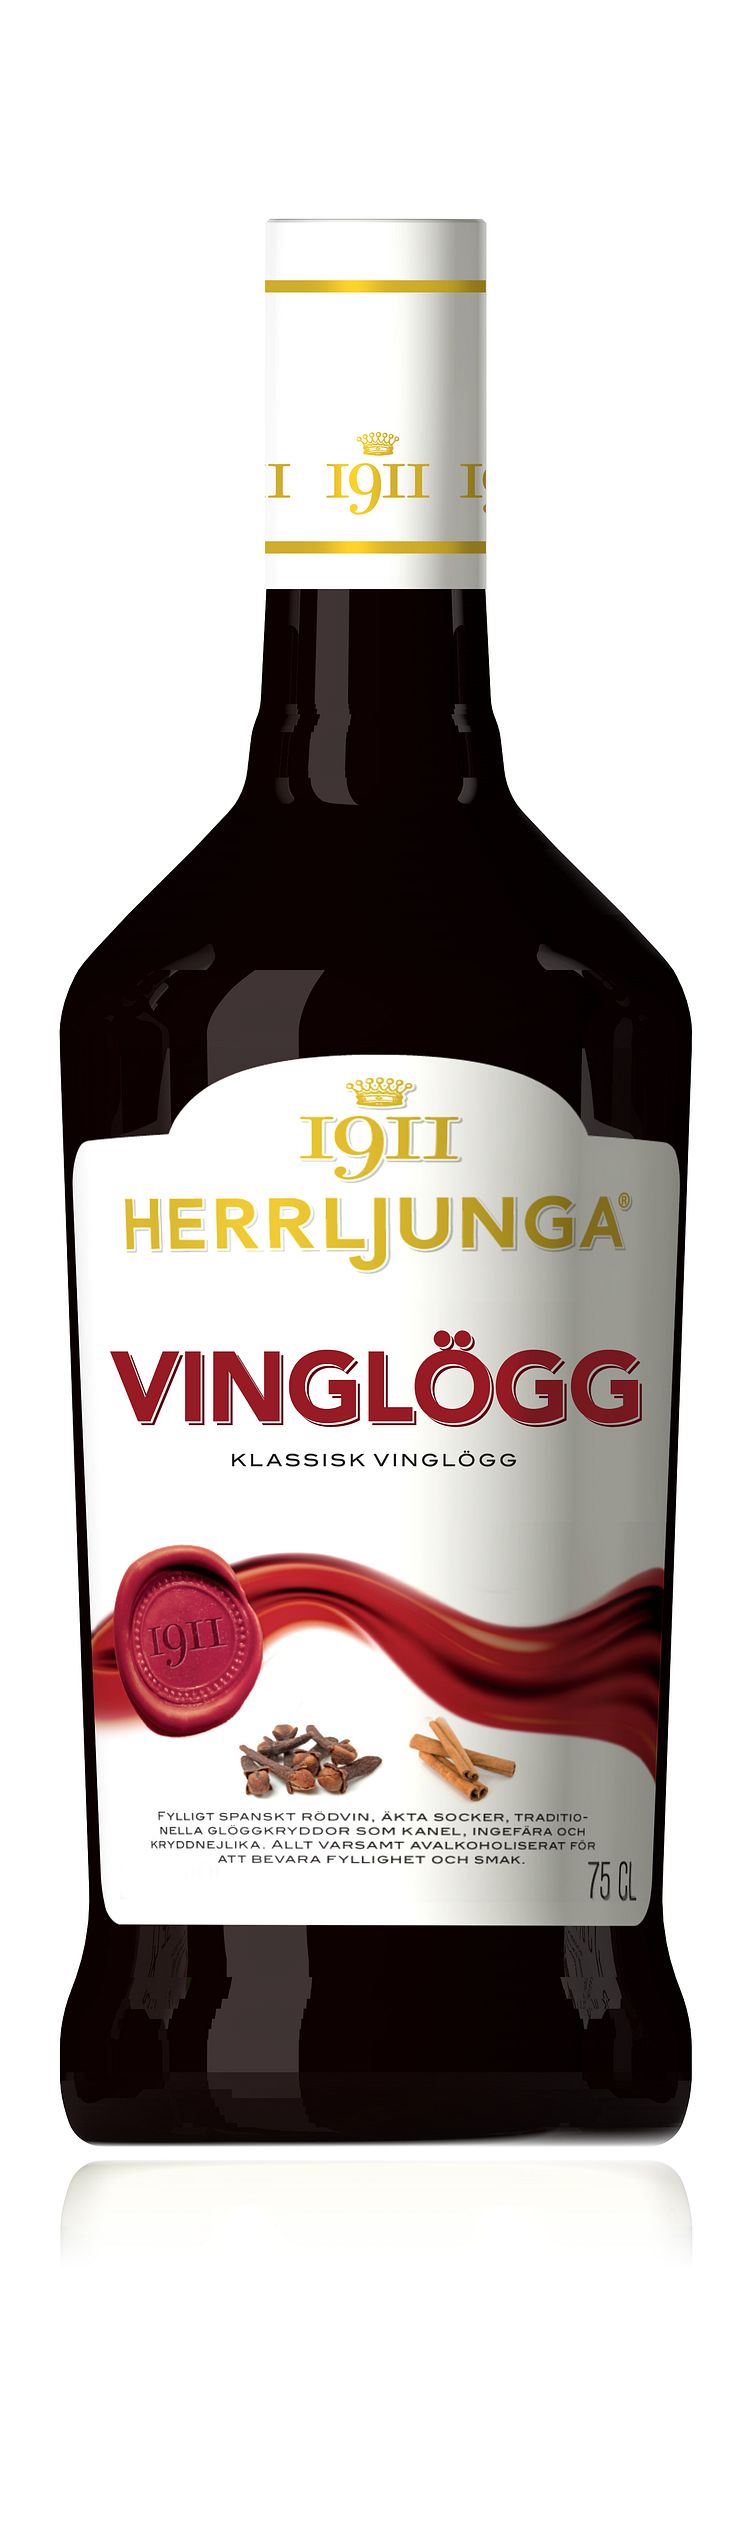 Herrljunga 1911 klassisk Vinglögg